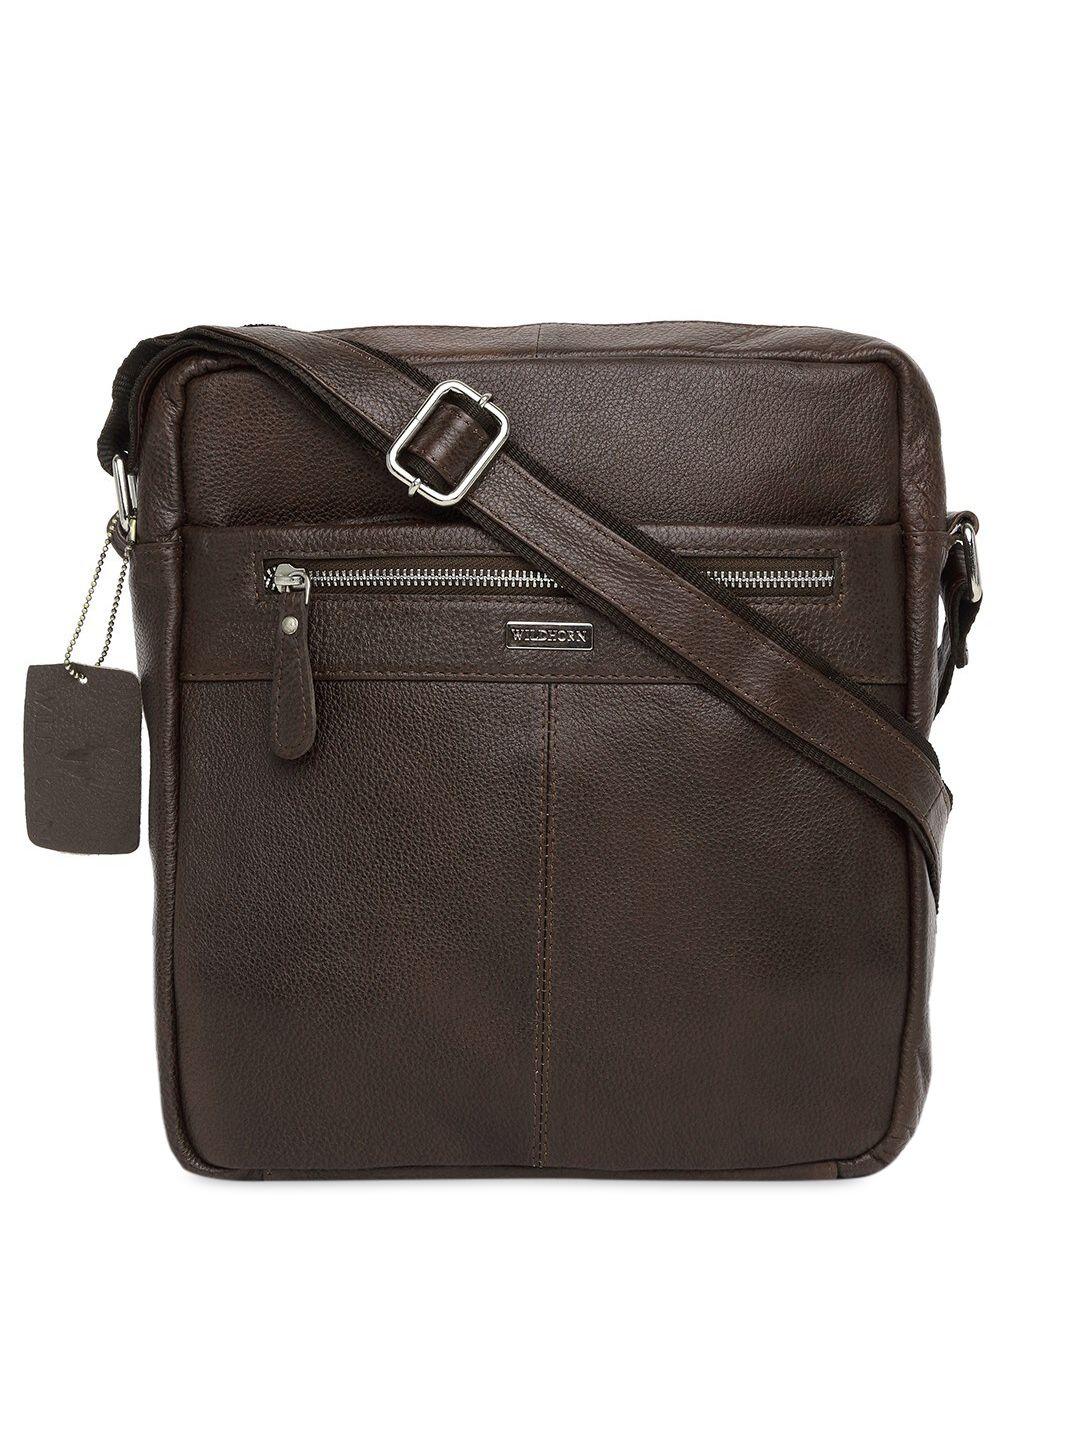 wildhorn men brown leather structured sling bag